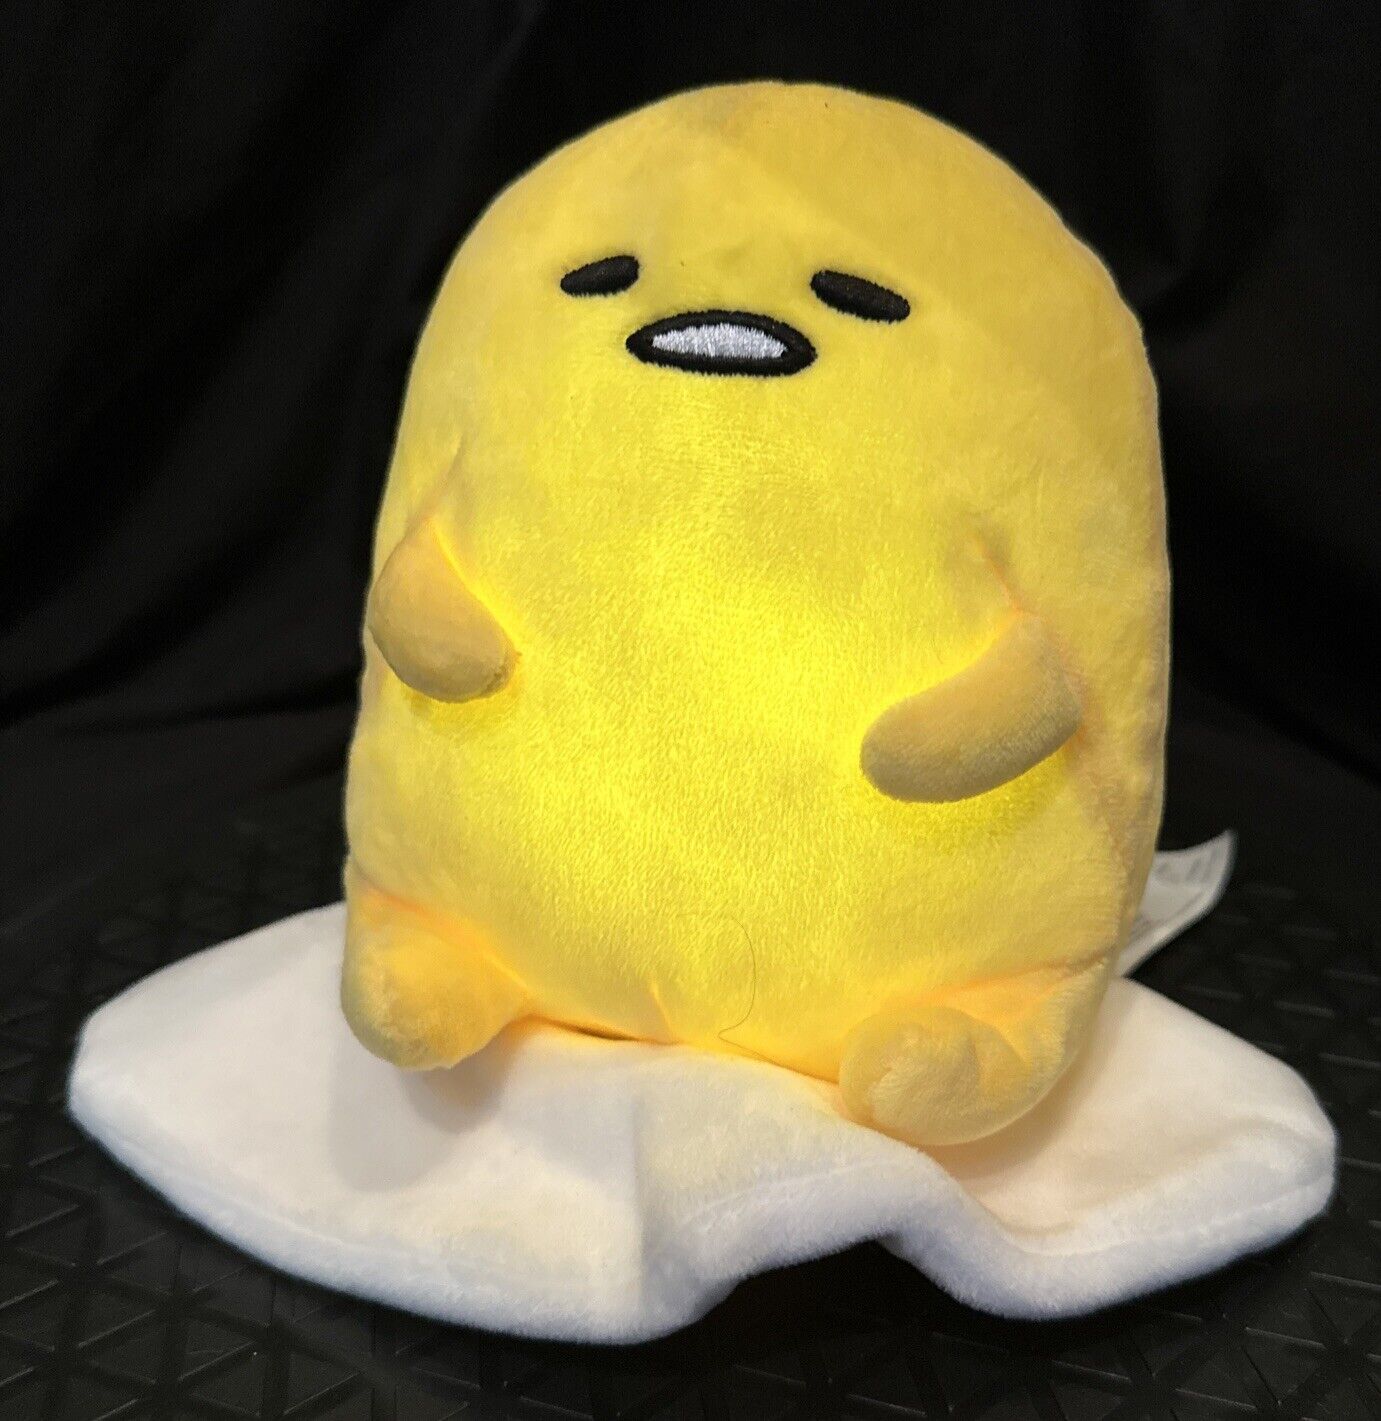 Gudetama The Lazy Egg Sitting Plush Sanrio Stuffed Animal Toy Cute Kawaii 6 Inch